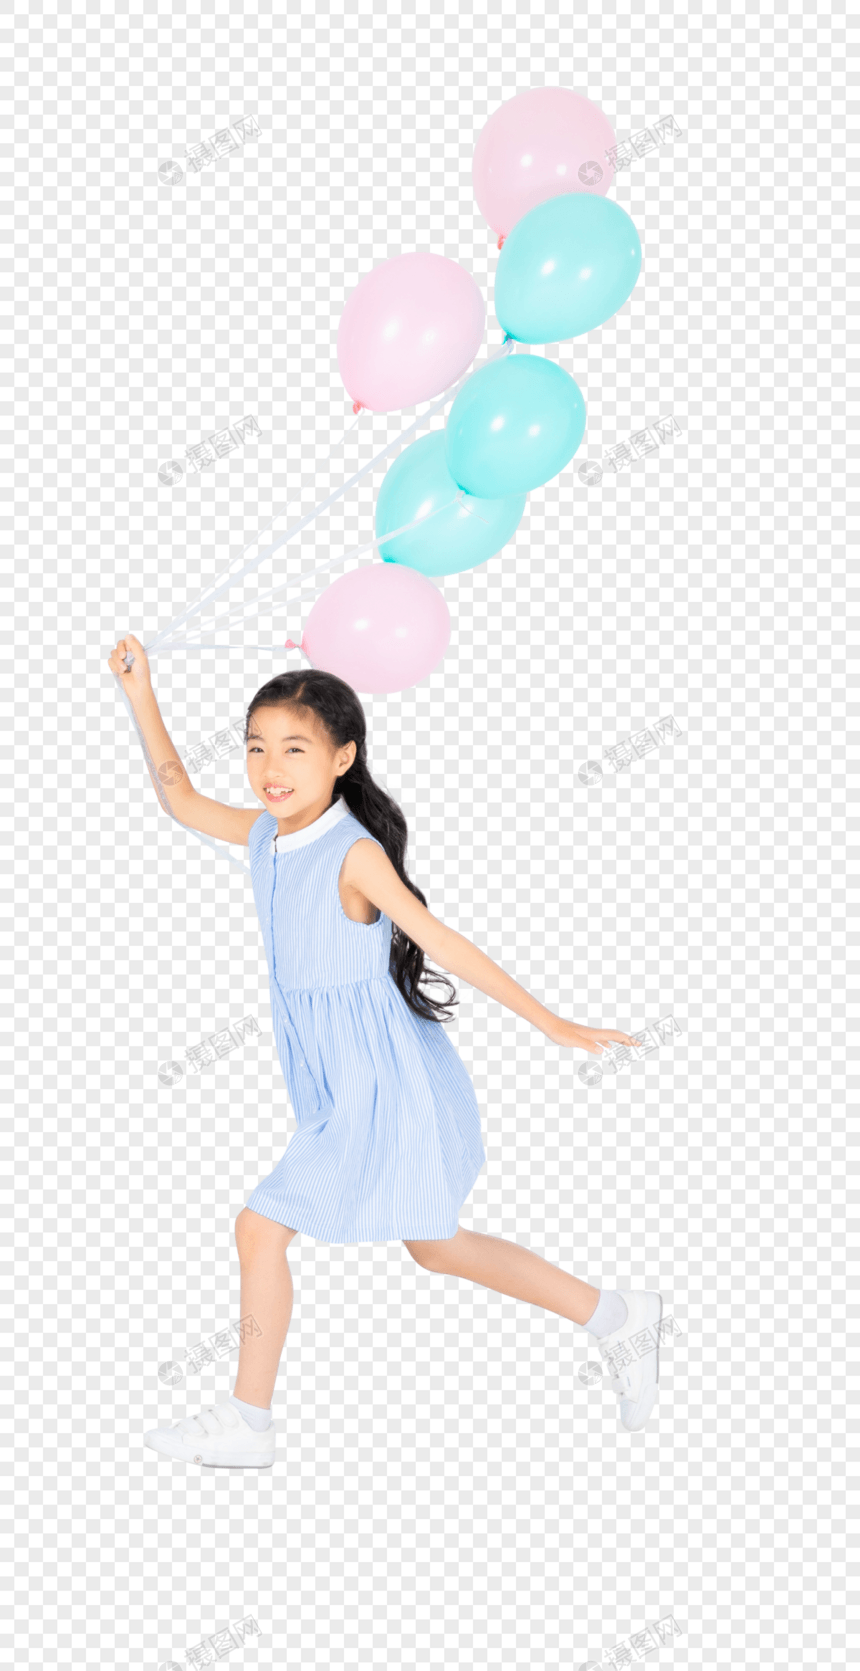 拿着气球的小女孩图片